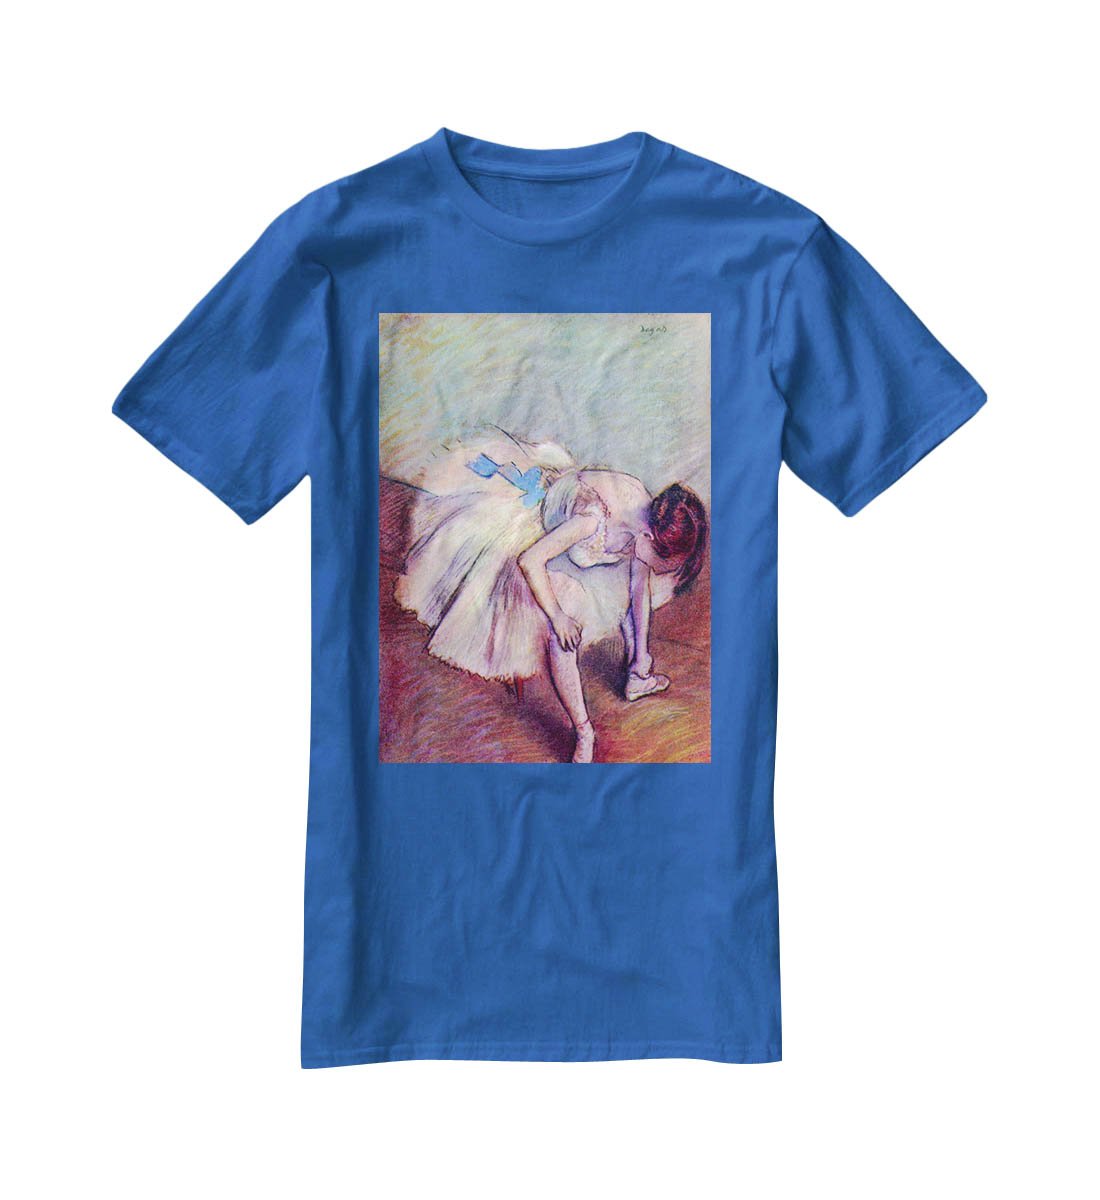 Dancer 2 by Degas T-Shirt - Canvas Art Rocks - 2